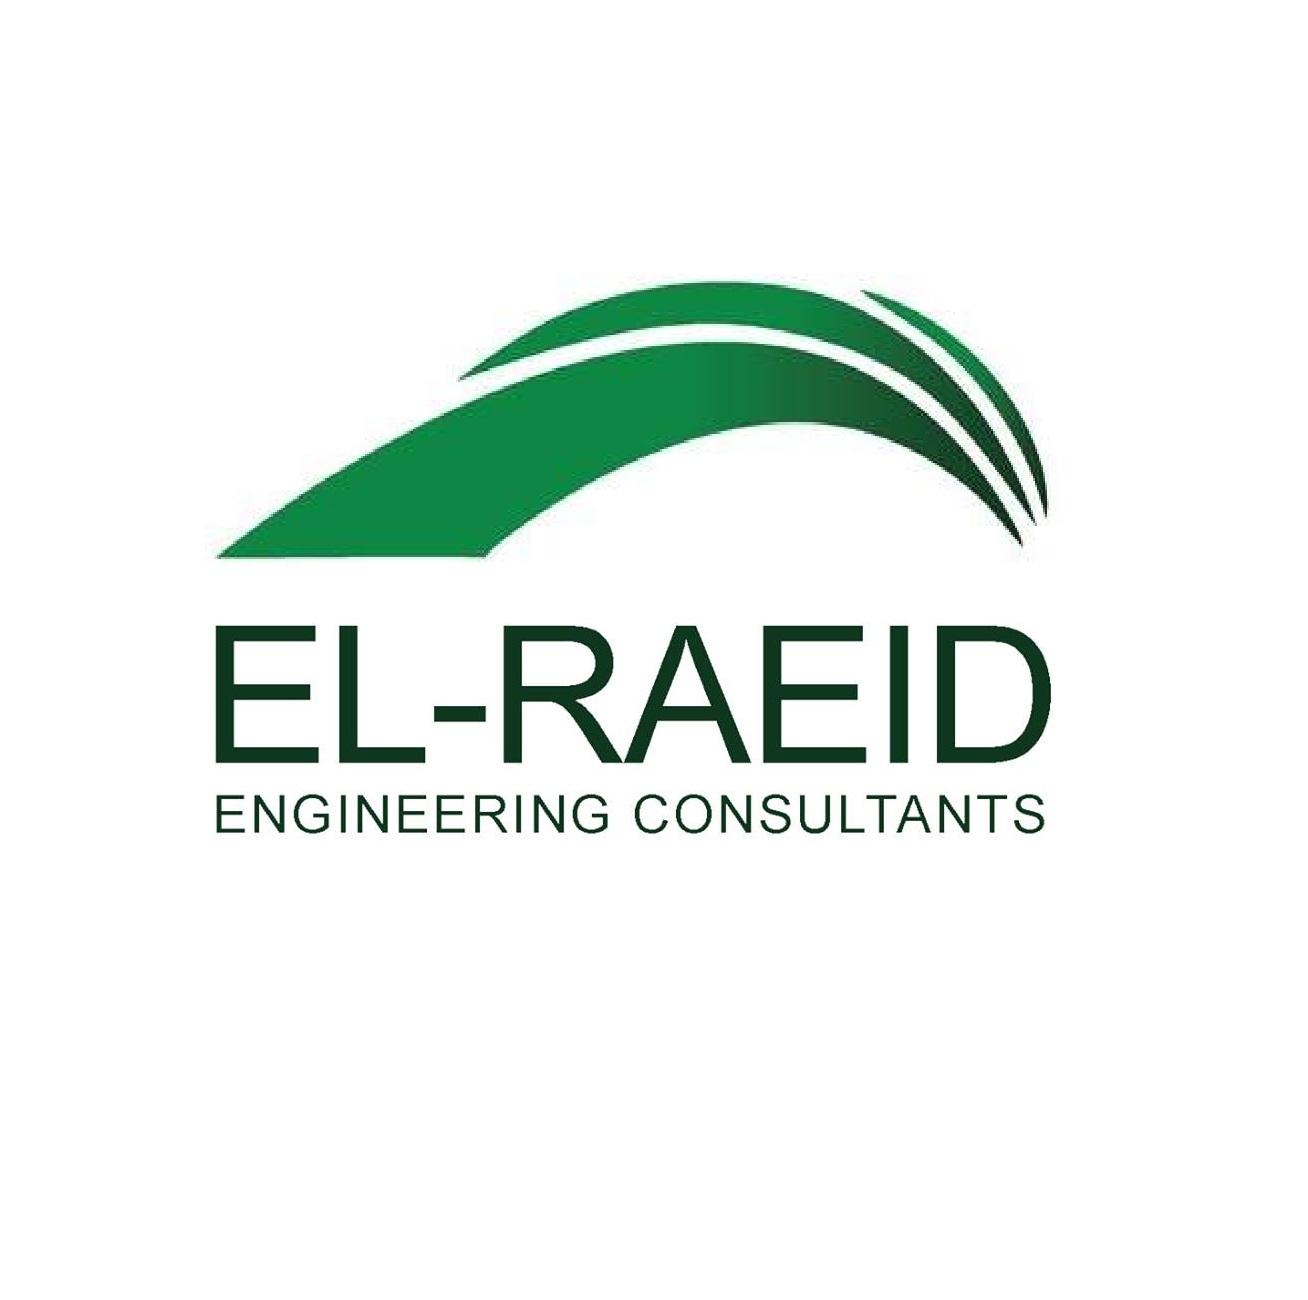 El RAEID Engineering Consultants